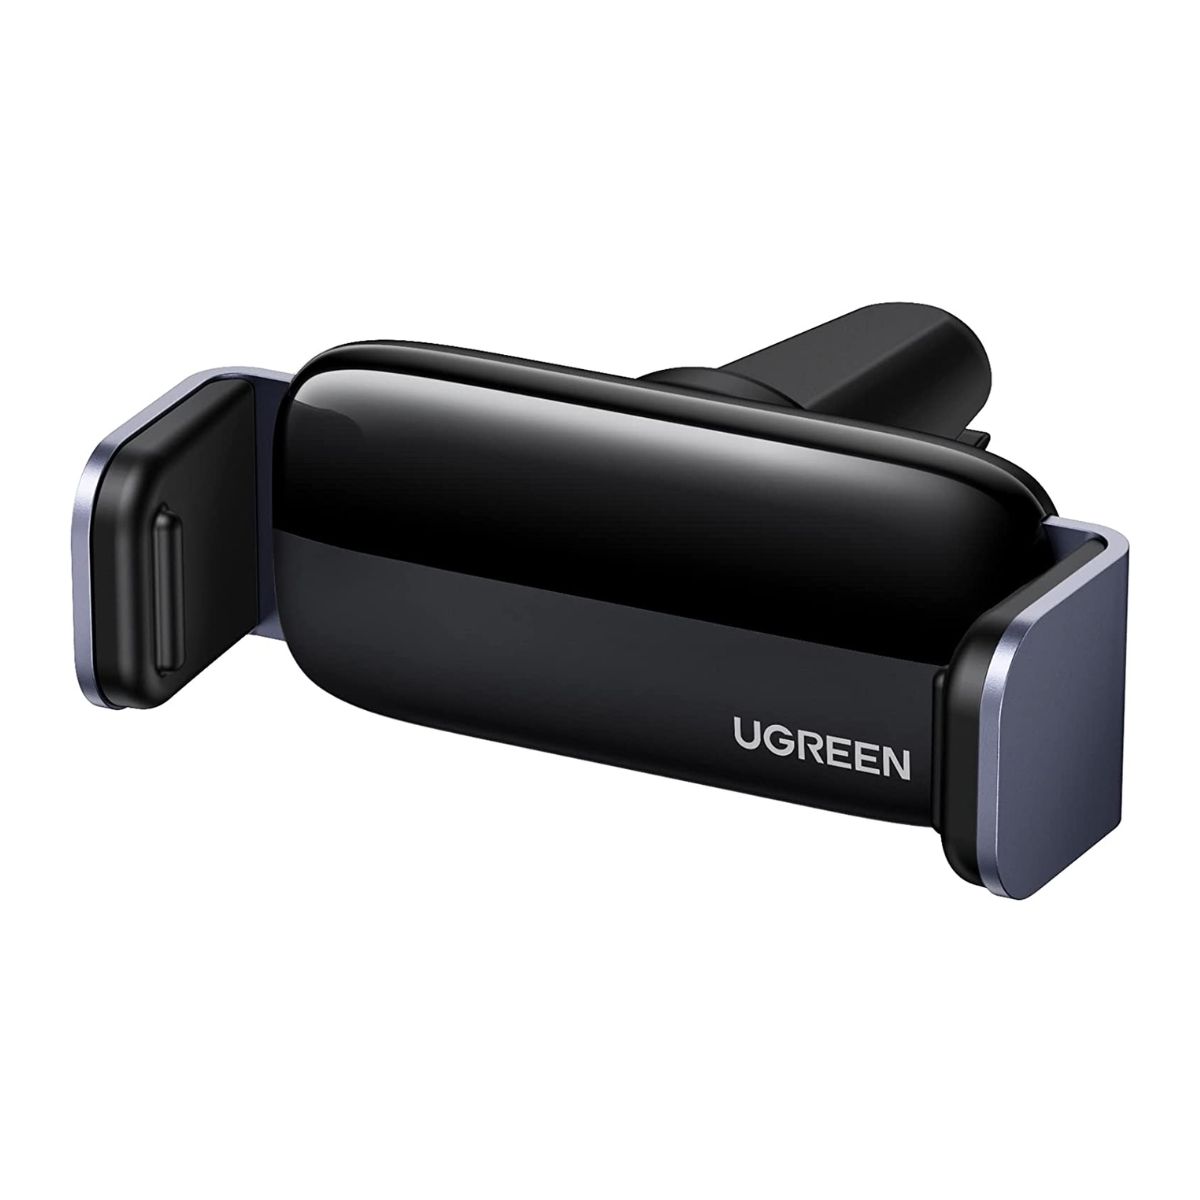 Giá đỡ điện thoại UGREEN 10422 LP120 cho điện thoại màn hình 4.7inch đến 7.2inch, xoay 360 độ, màu đen